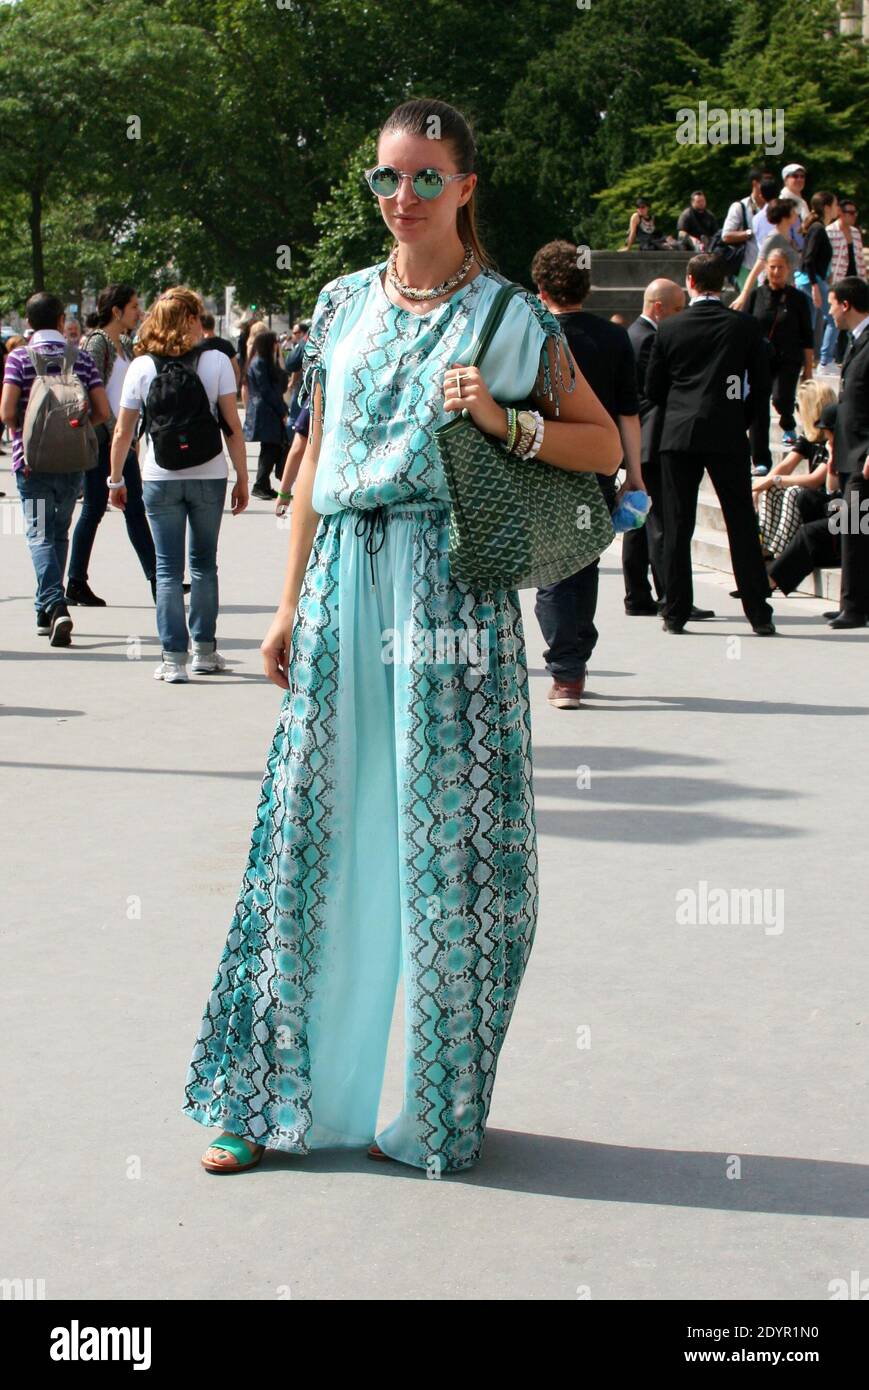 Style de rue. Une fashionista assiste au salon de la haute-Couture automne-hiver  2013-2014 de Chanel au Grand Palais de Paris, France, le 2 juillet 2013.  Dunja, blogueur (styledissection.com), porte un combinaison Mango,